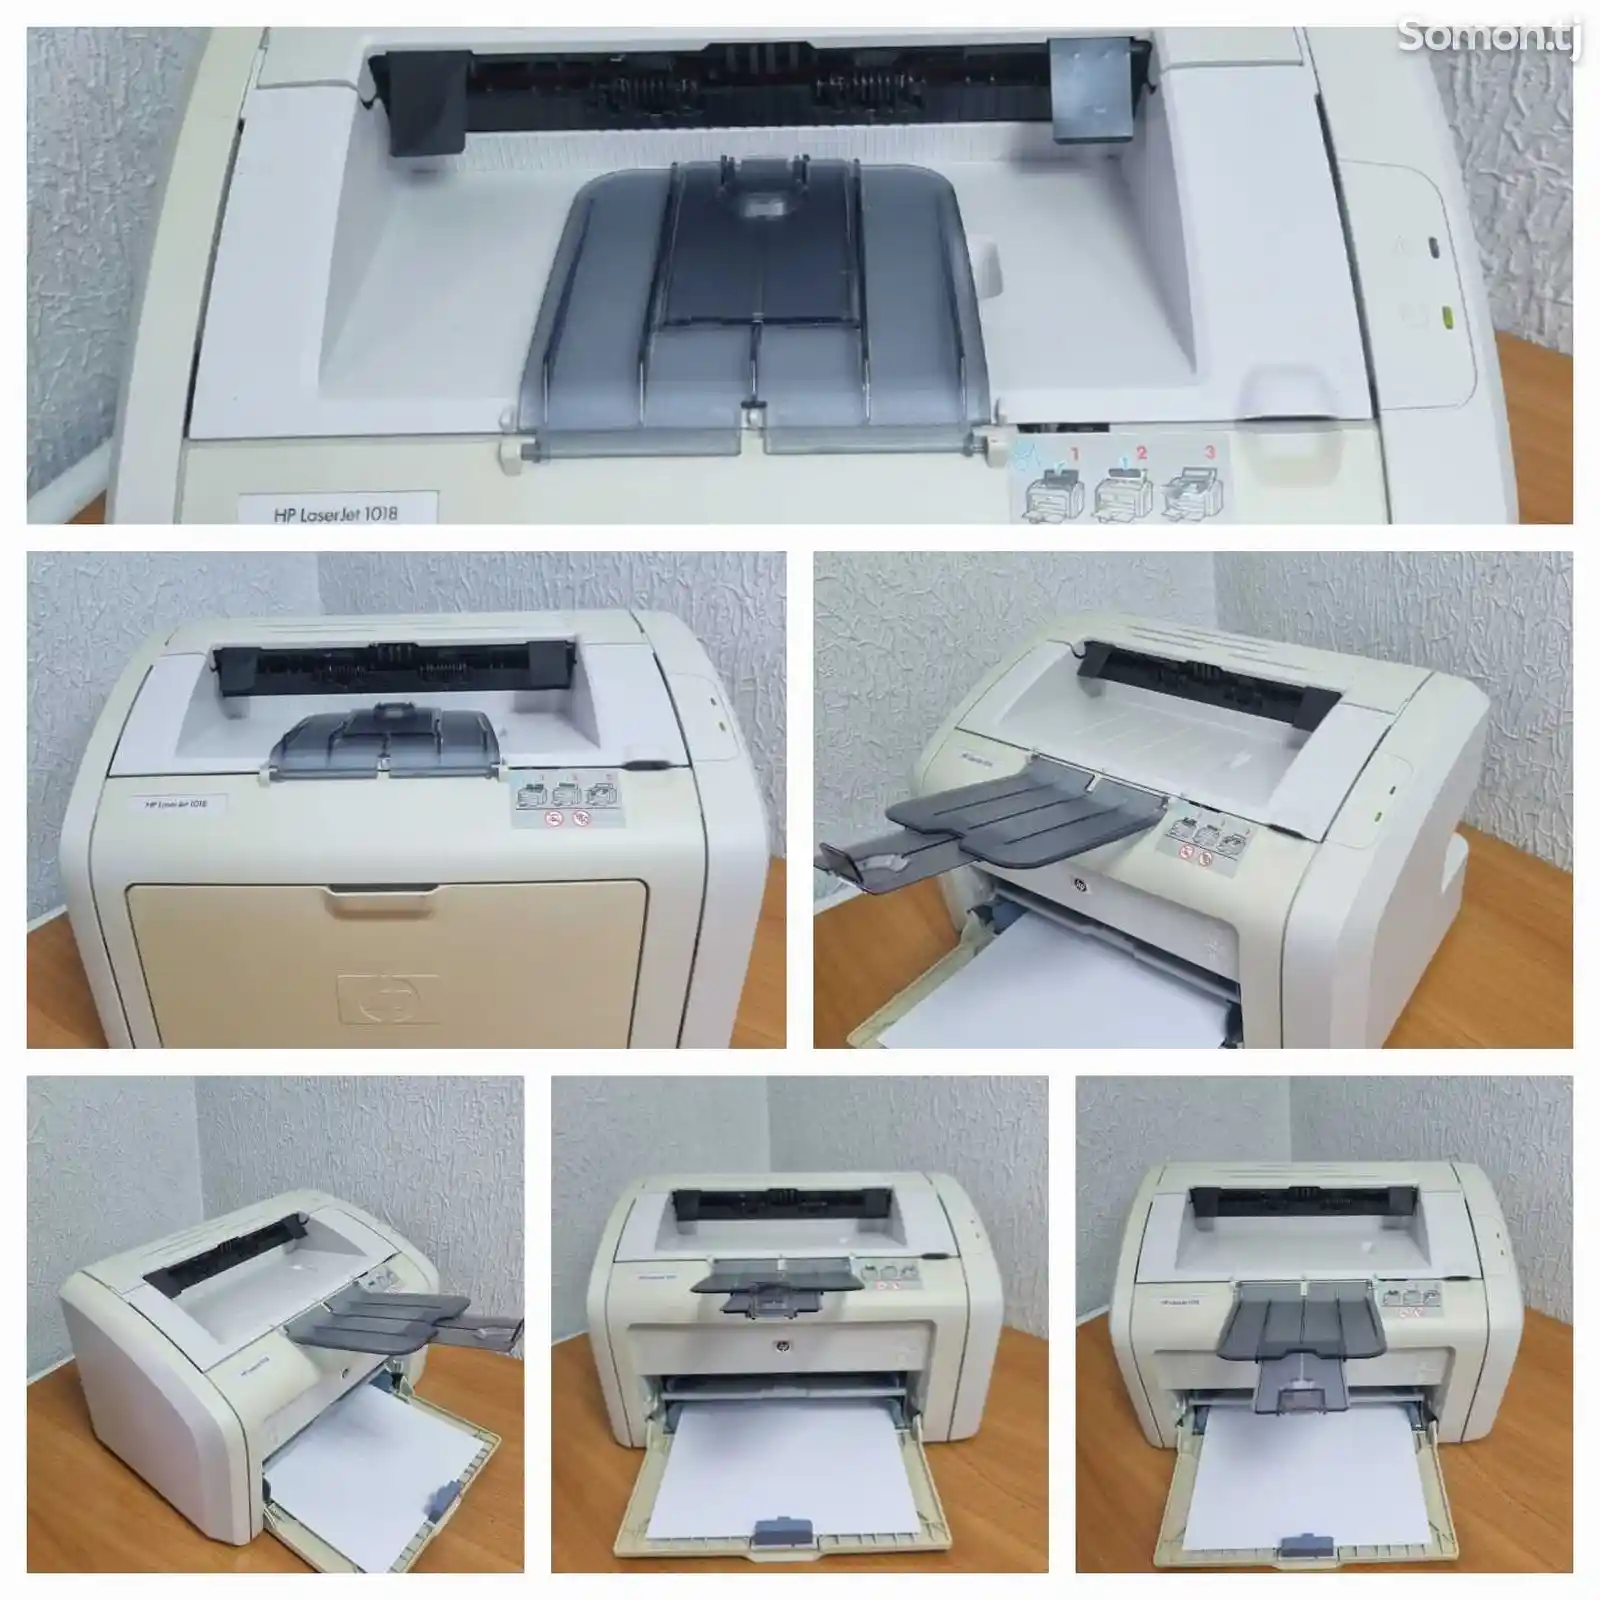 Принтер лазерный HP P1018-2